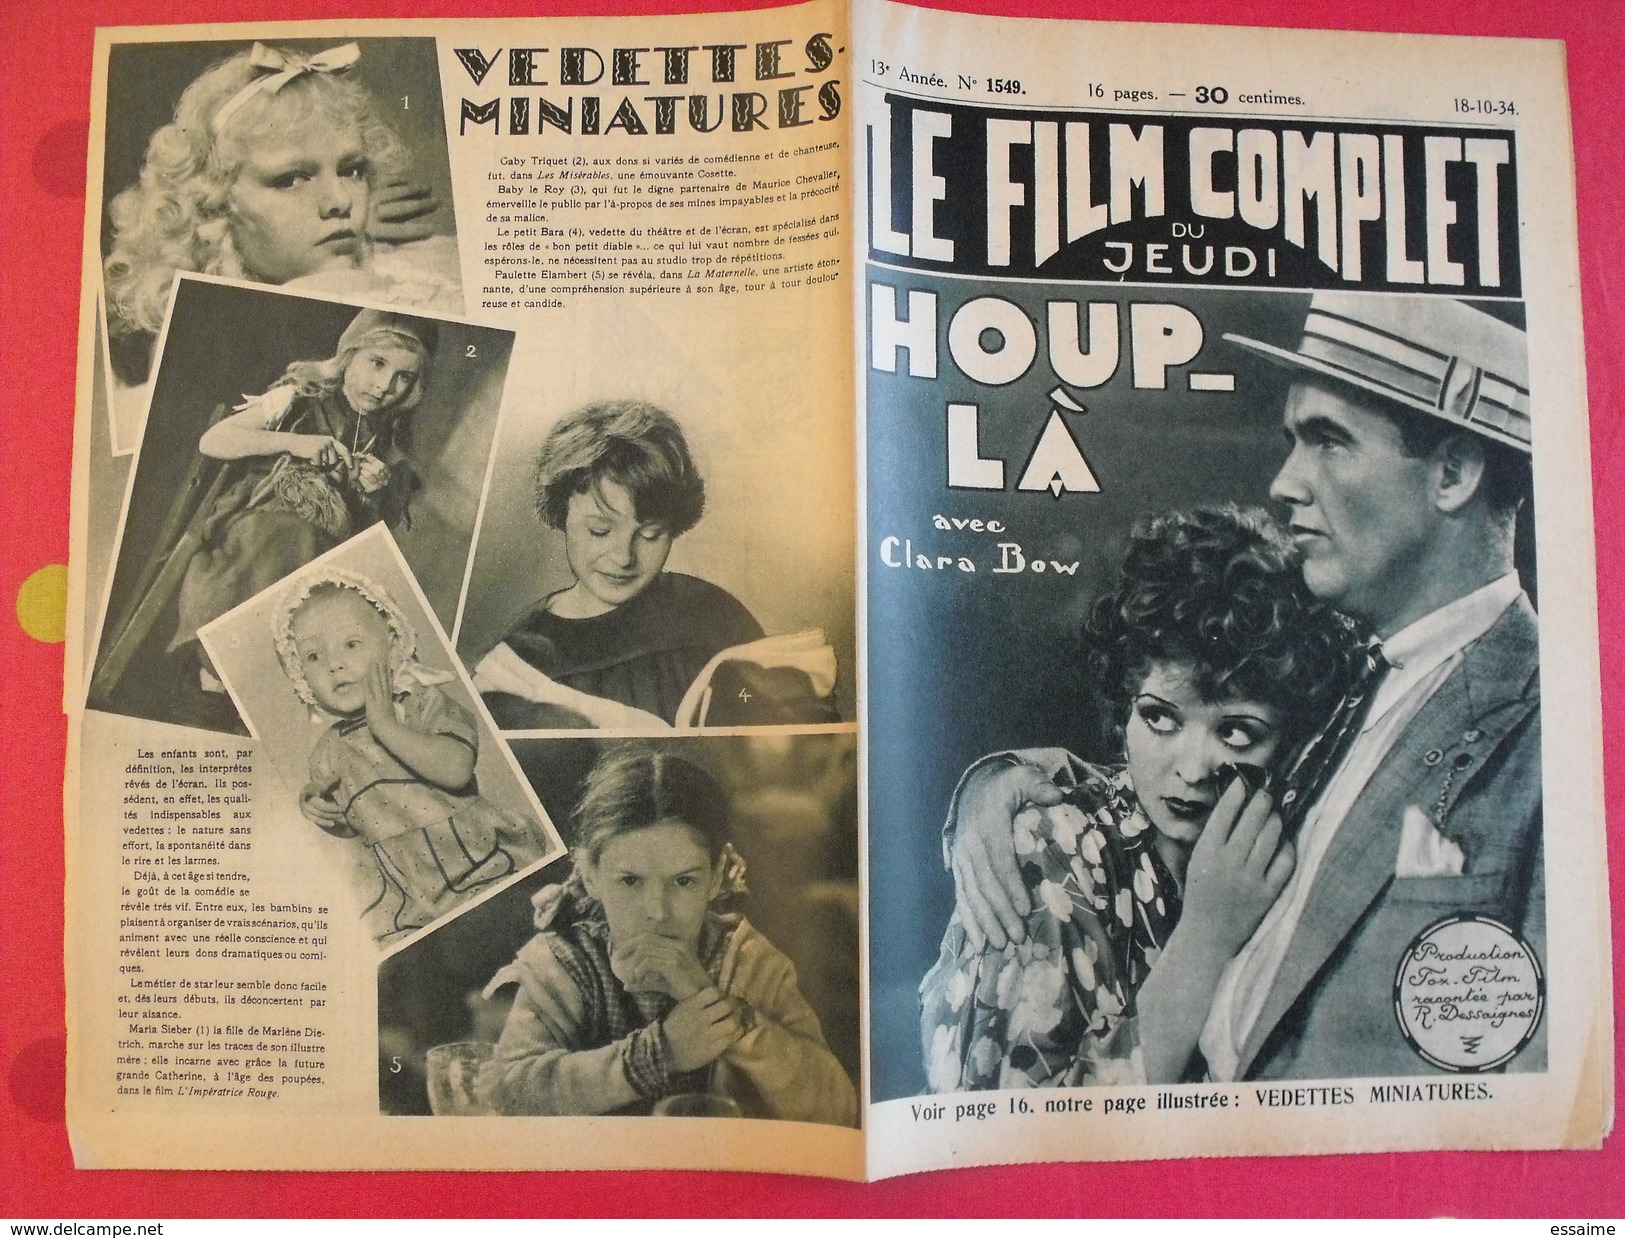 9 revues "le film complet" 1934. joan crawford paulette dubost marlène dietrich jean arthur brigitte helm simone simon